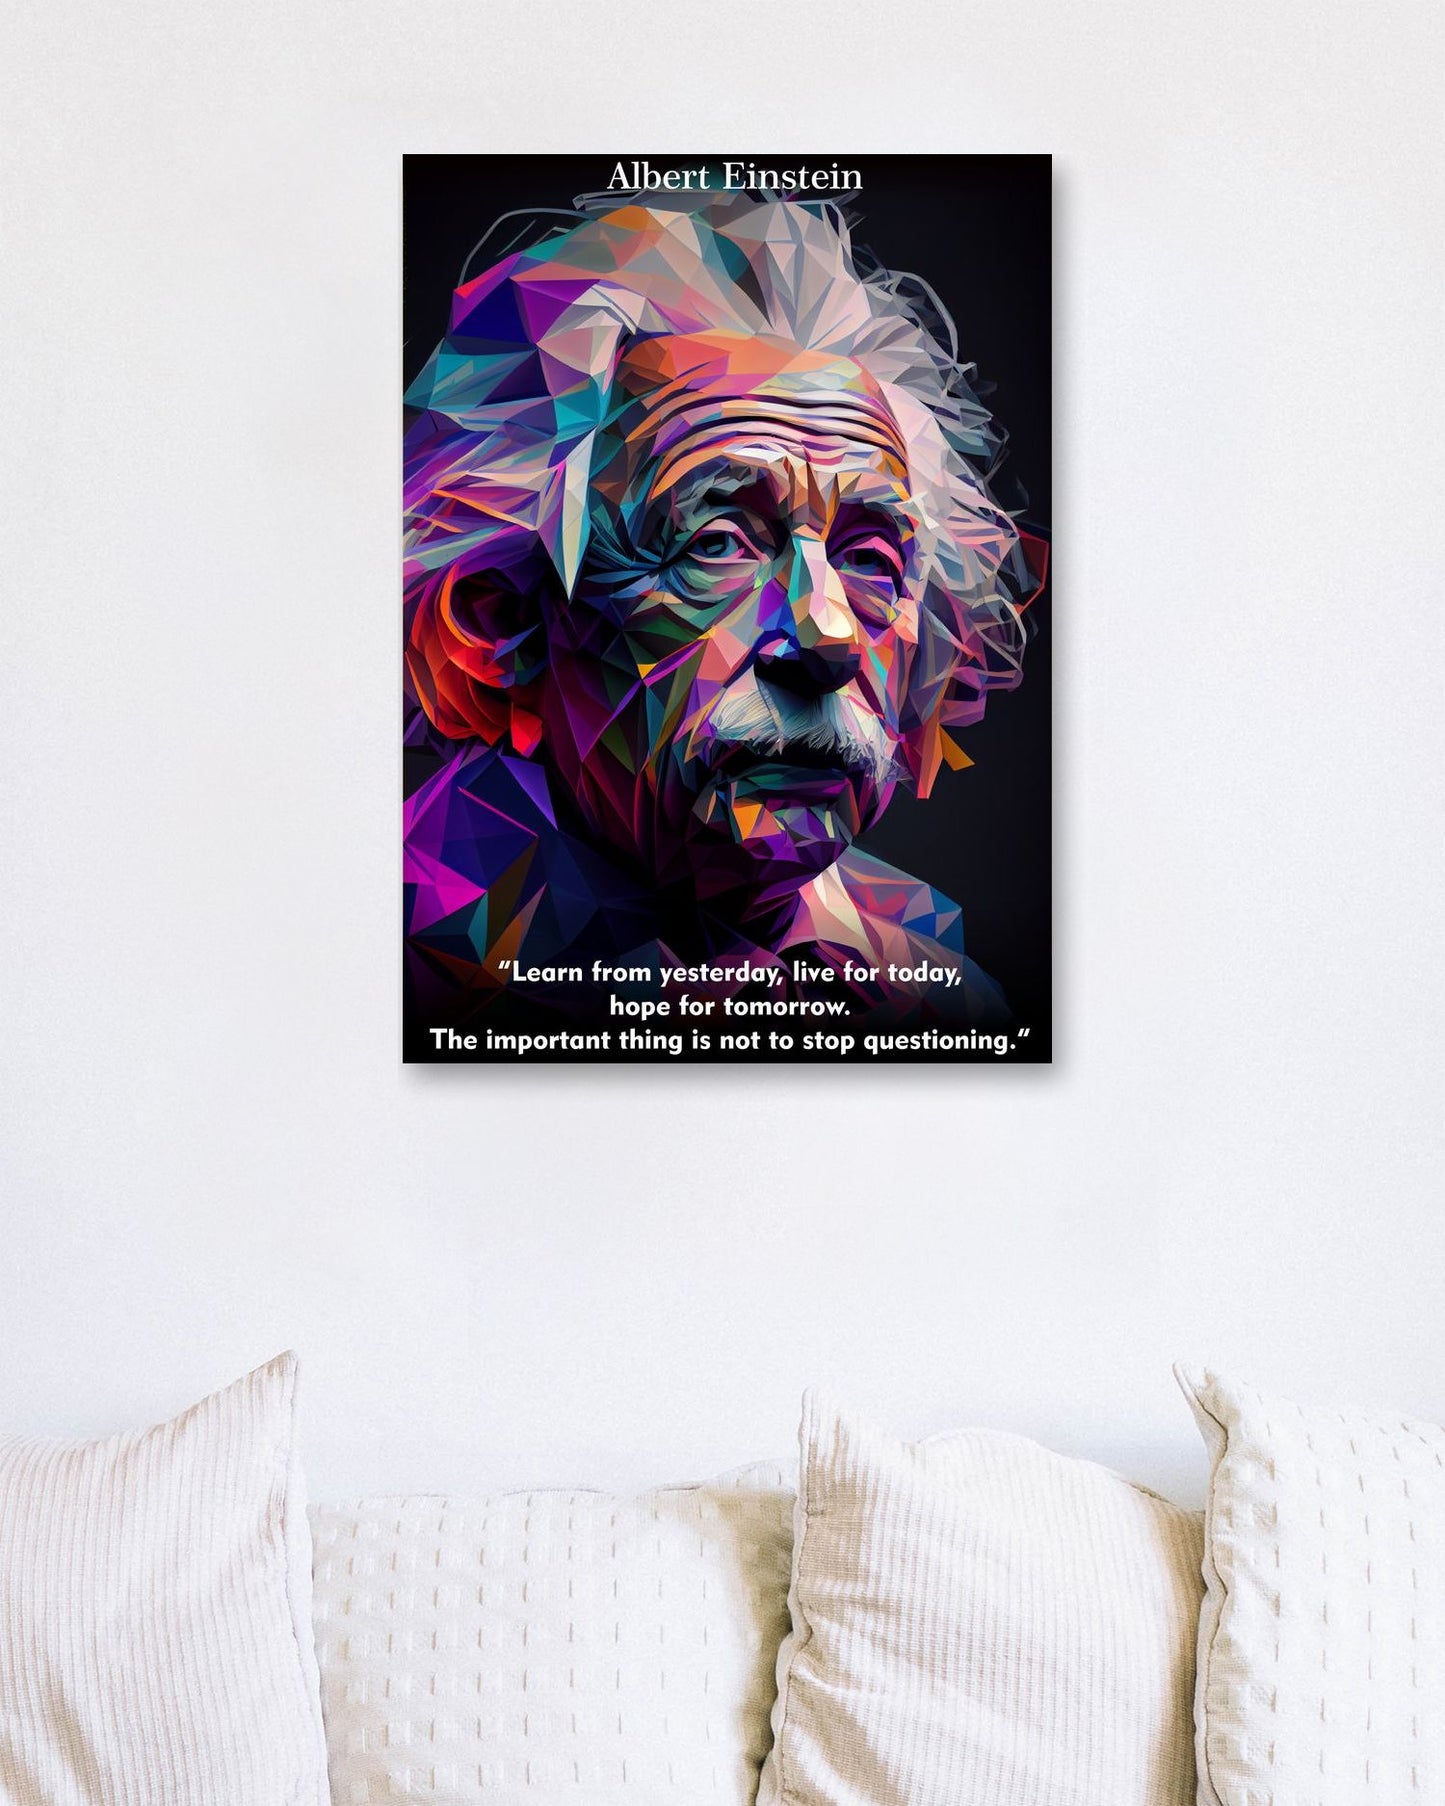 Albert Einstein WPAP - @WpapArtist